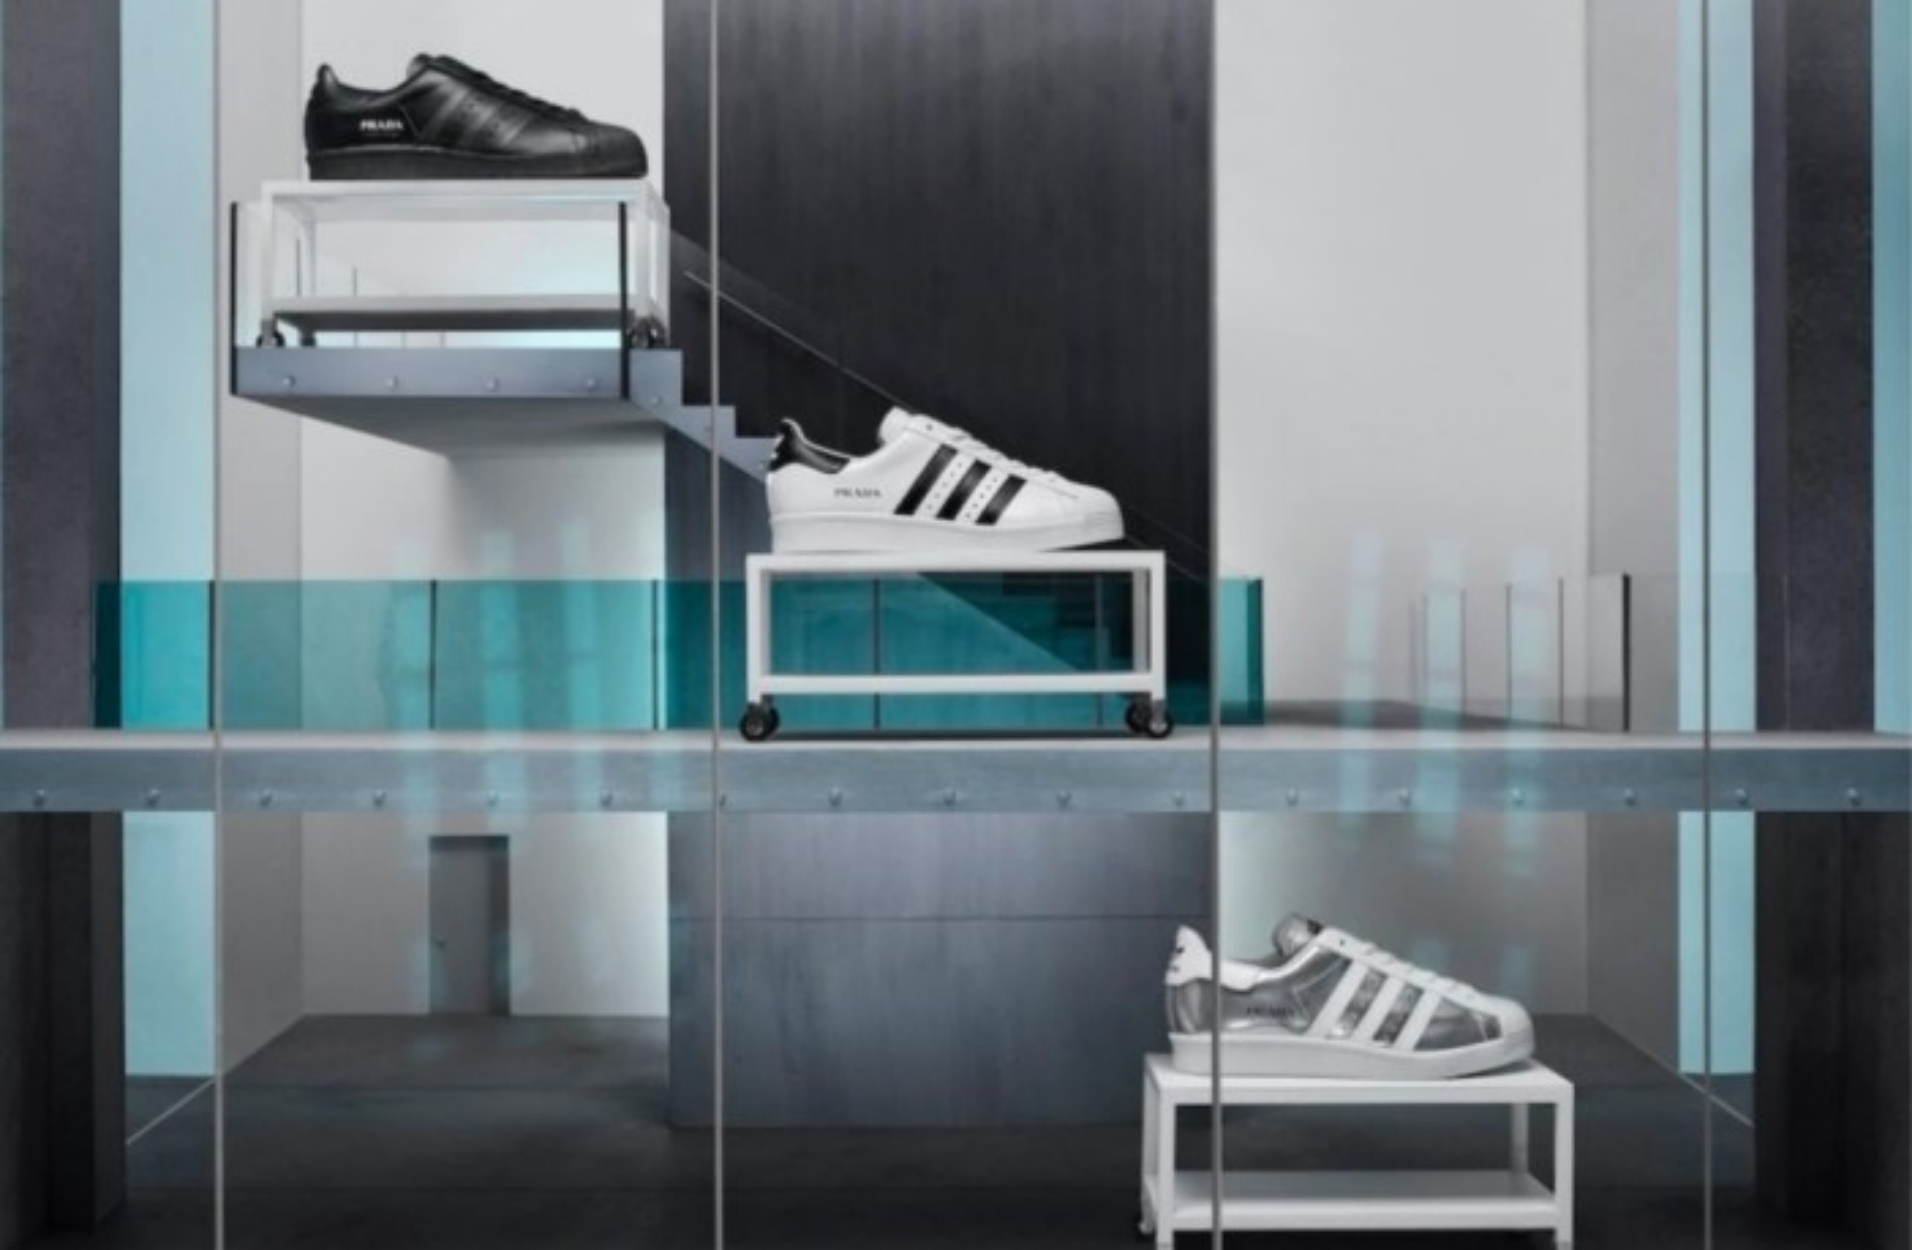 Δείτε τα τρία νέα adidas Superstar που σχεδιάστηκαν σε συνεργασία με τον οίκο Prada